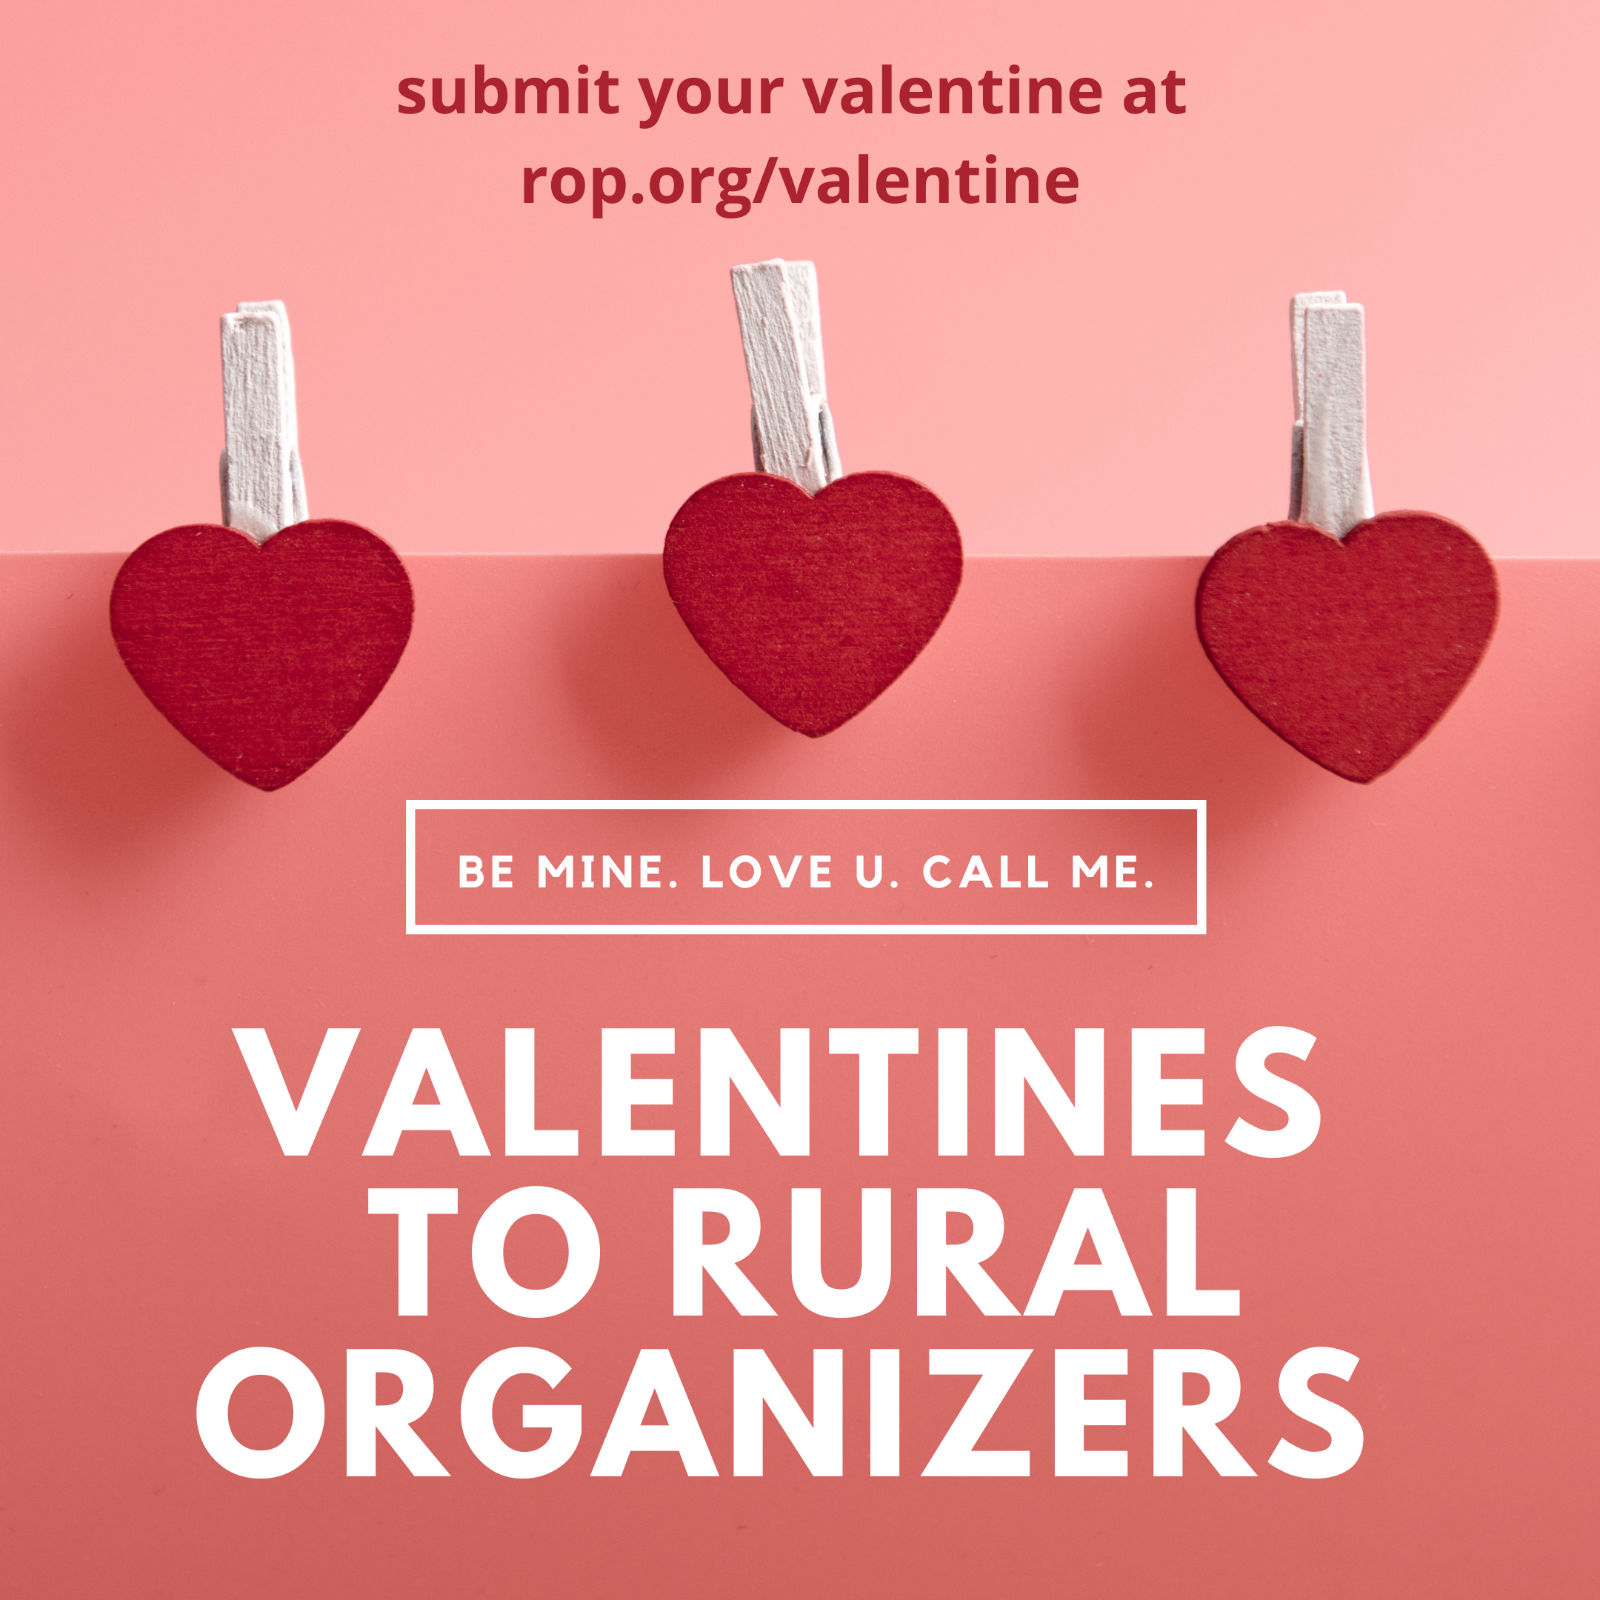 在 rop.org/valentine 提交您的情人。